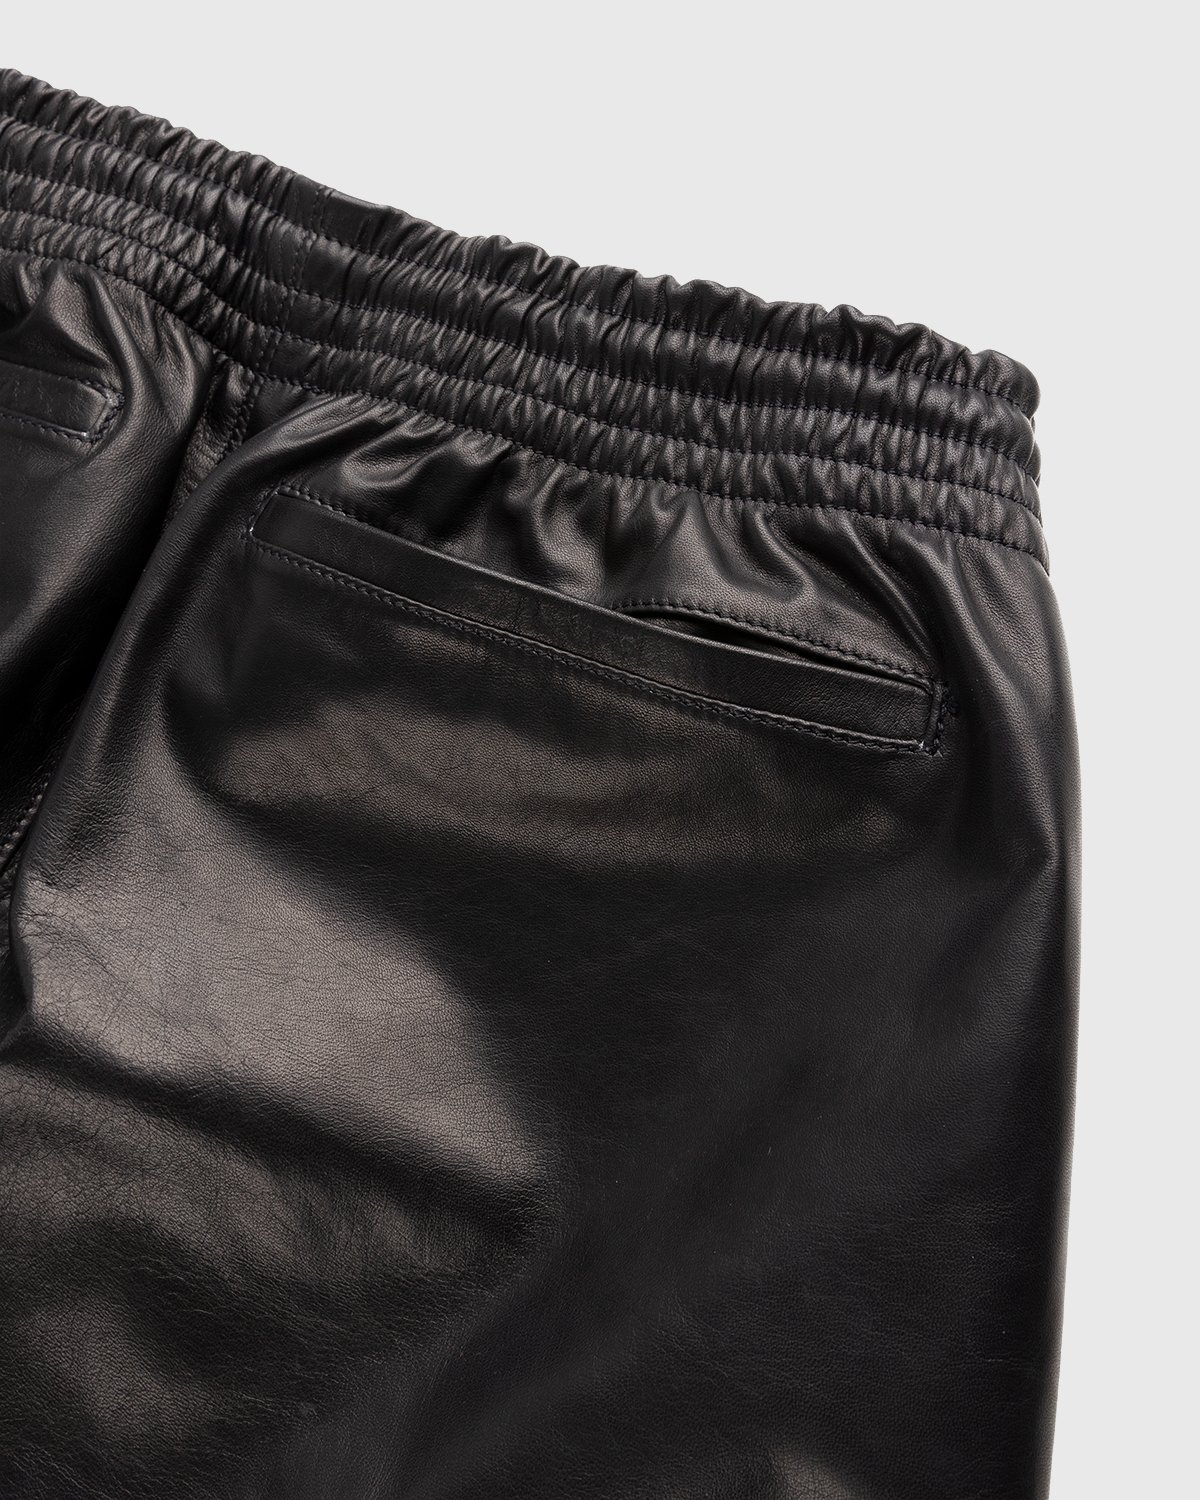 Highsnobiety x Butcherei Lindinger - Shorts Black - Clothing - Black - Image 3